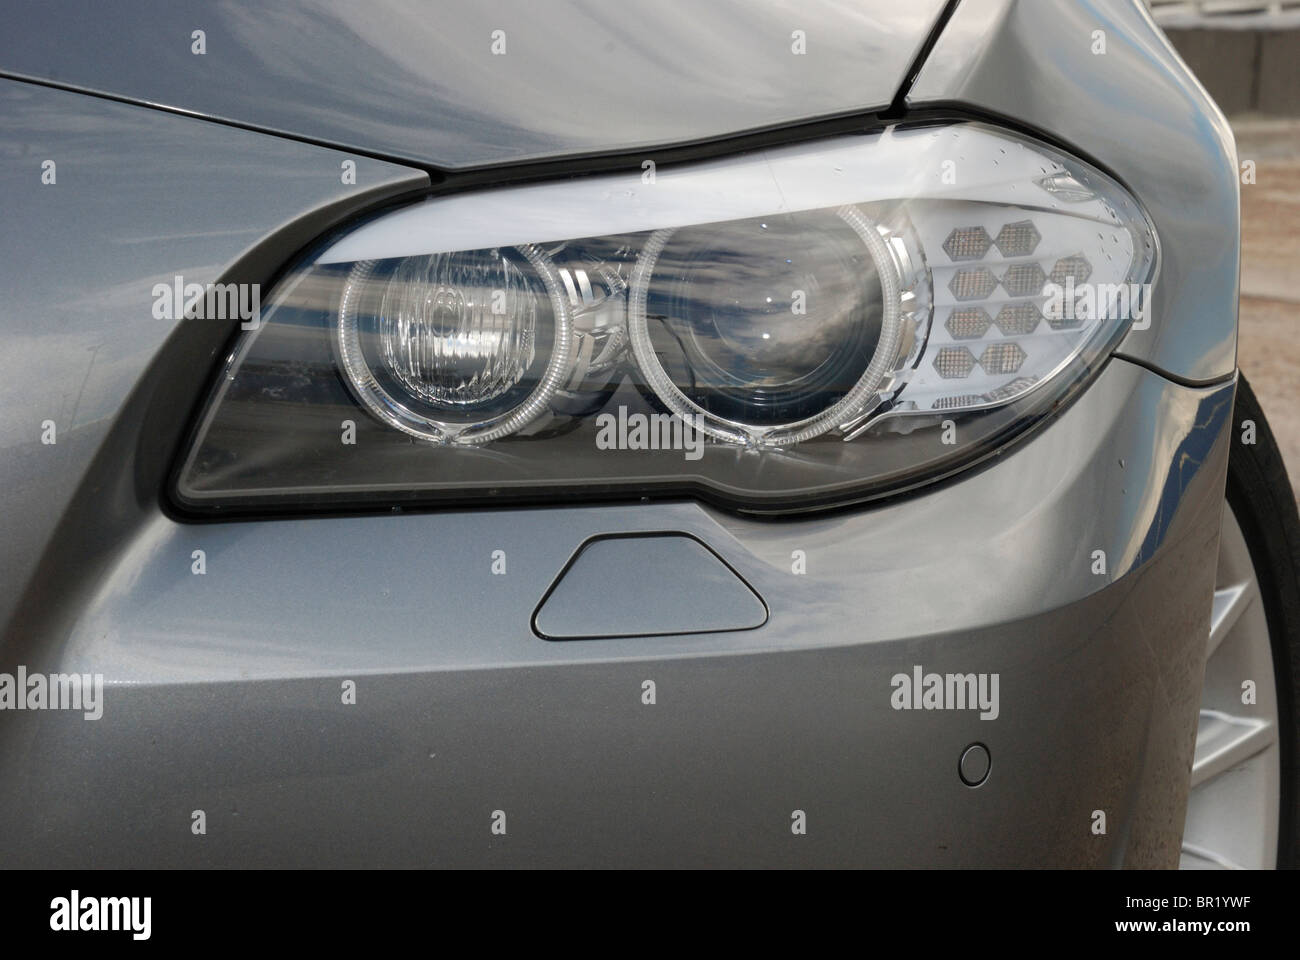 BMW 535i - MY2010 - grau Metallic - deutsche Premium-höhere Klasse Limousine, E-Segment, Executive - Details: vordere Reflektor, Scheinwerfer Stockfoto